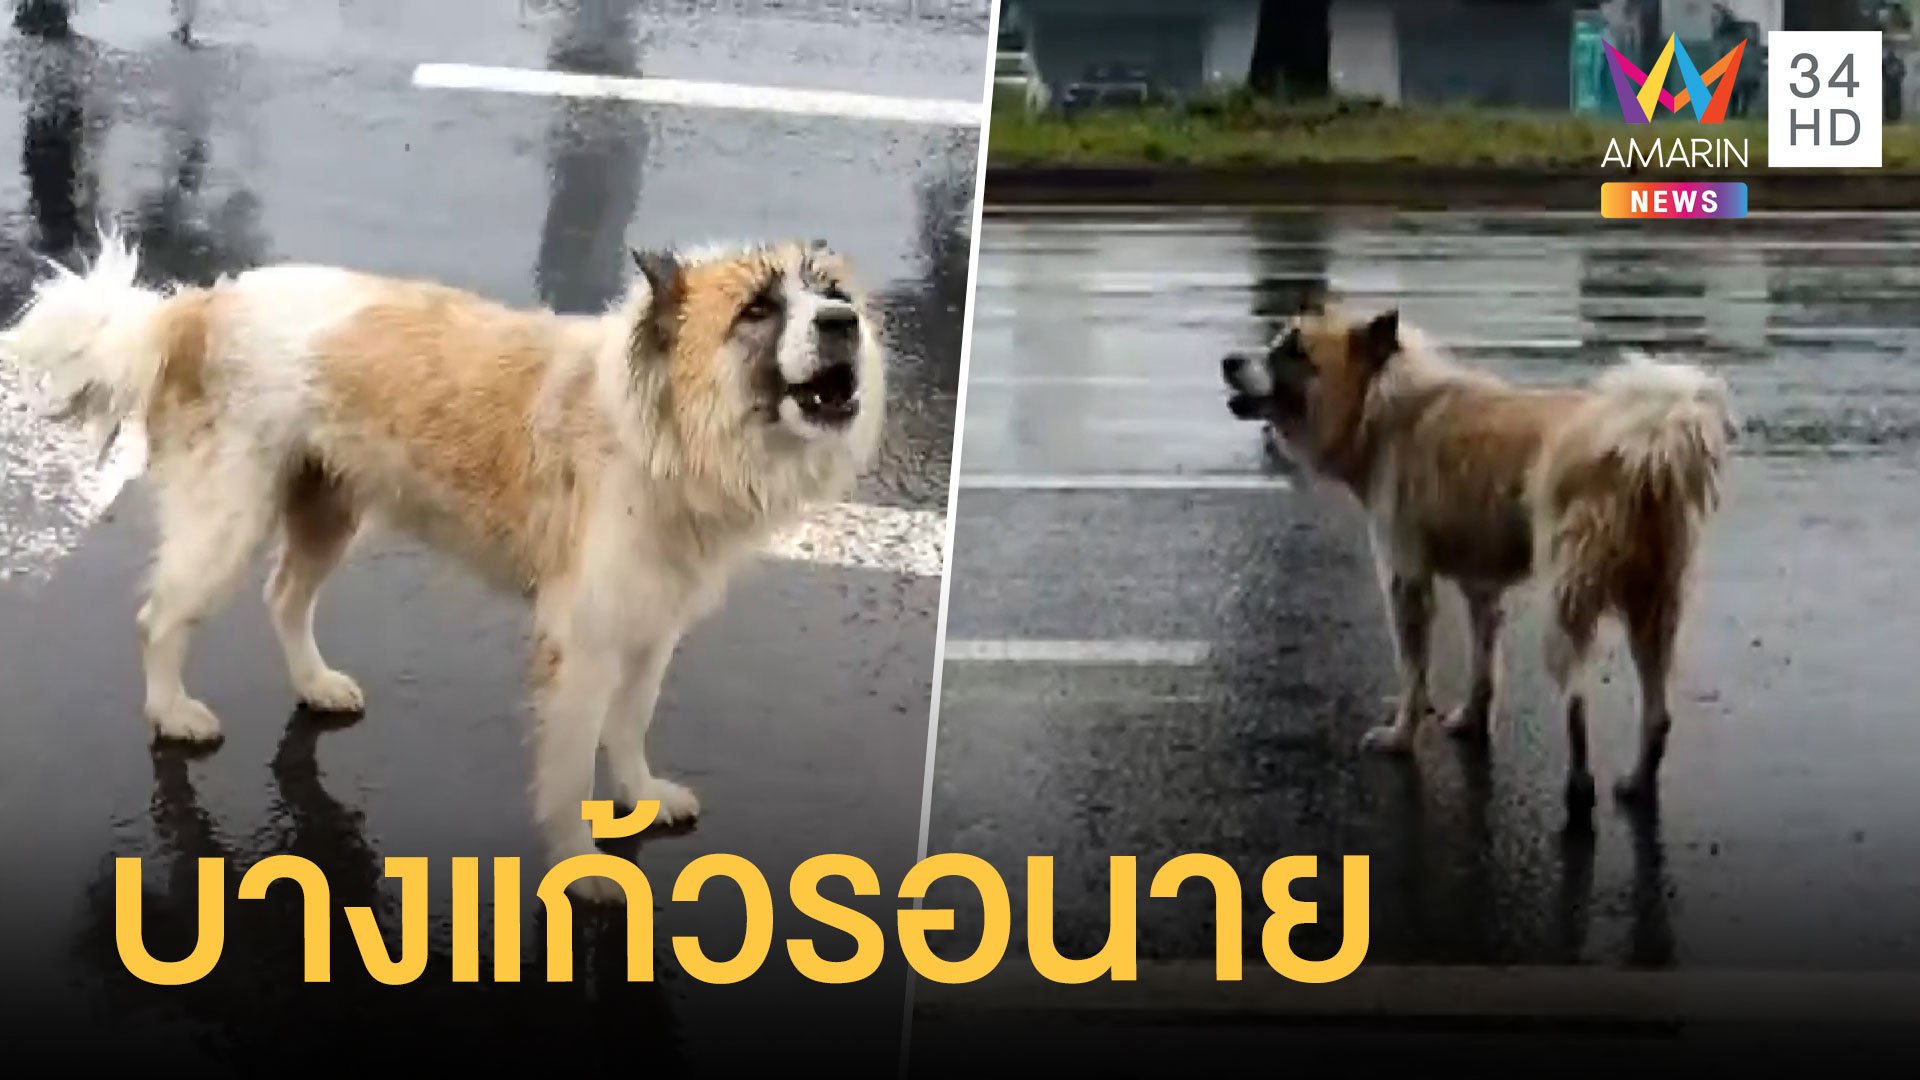 หมาบางแก้วถูกทิ้งตากฝนรอเจ้านาย | ข่าวอรุณอมรินทร์ สุดสัปดาห์ | 28 ส.ค. 64 | AMARIN TVHD34